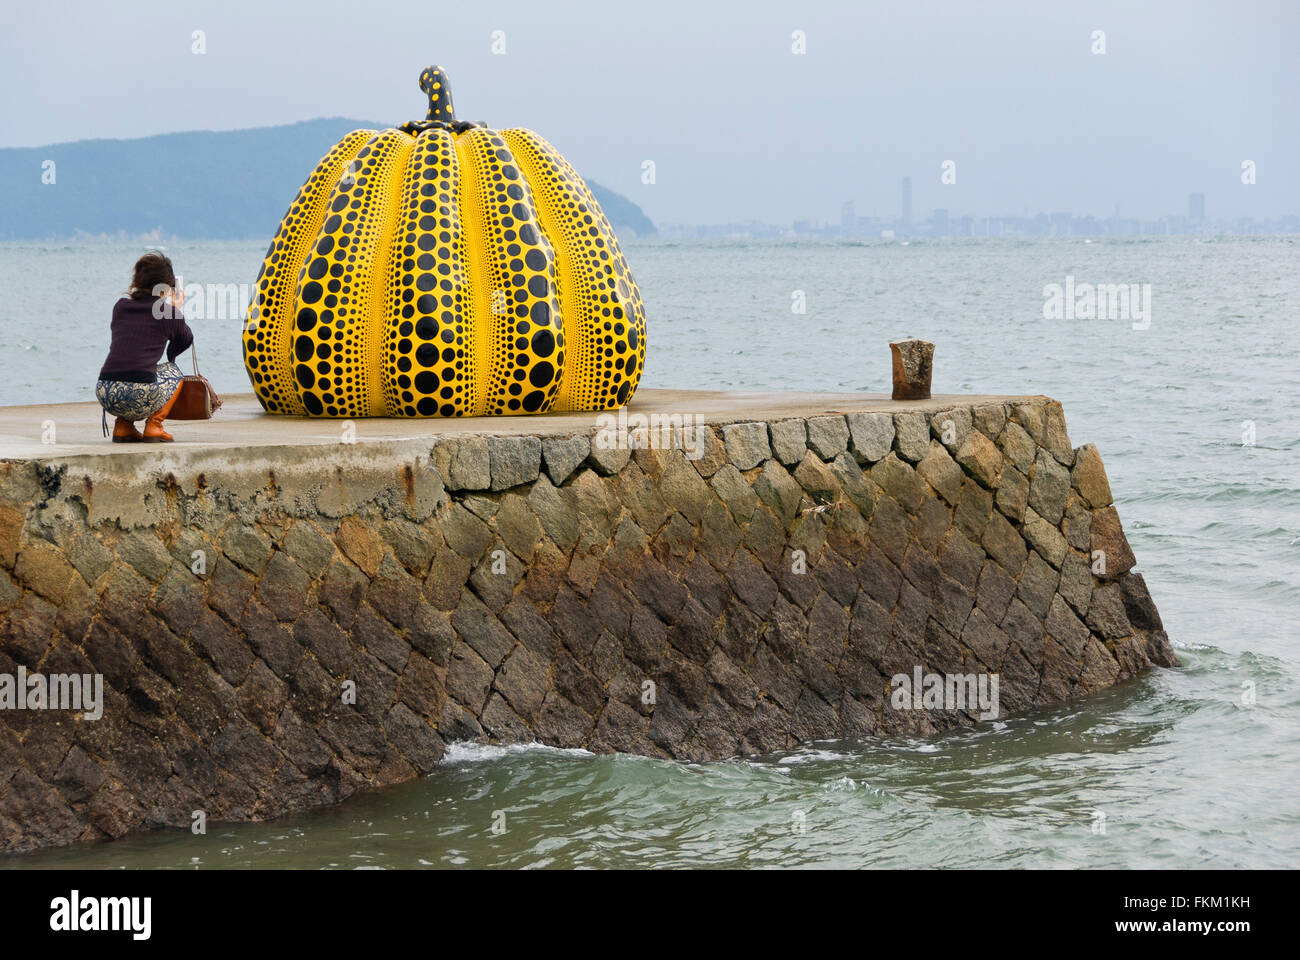 'Pumpkin' sculpture by Yayoi Kusama on Naoshima Island in Japan Stock Photo